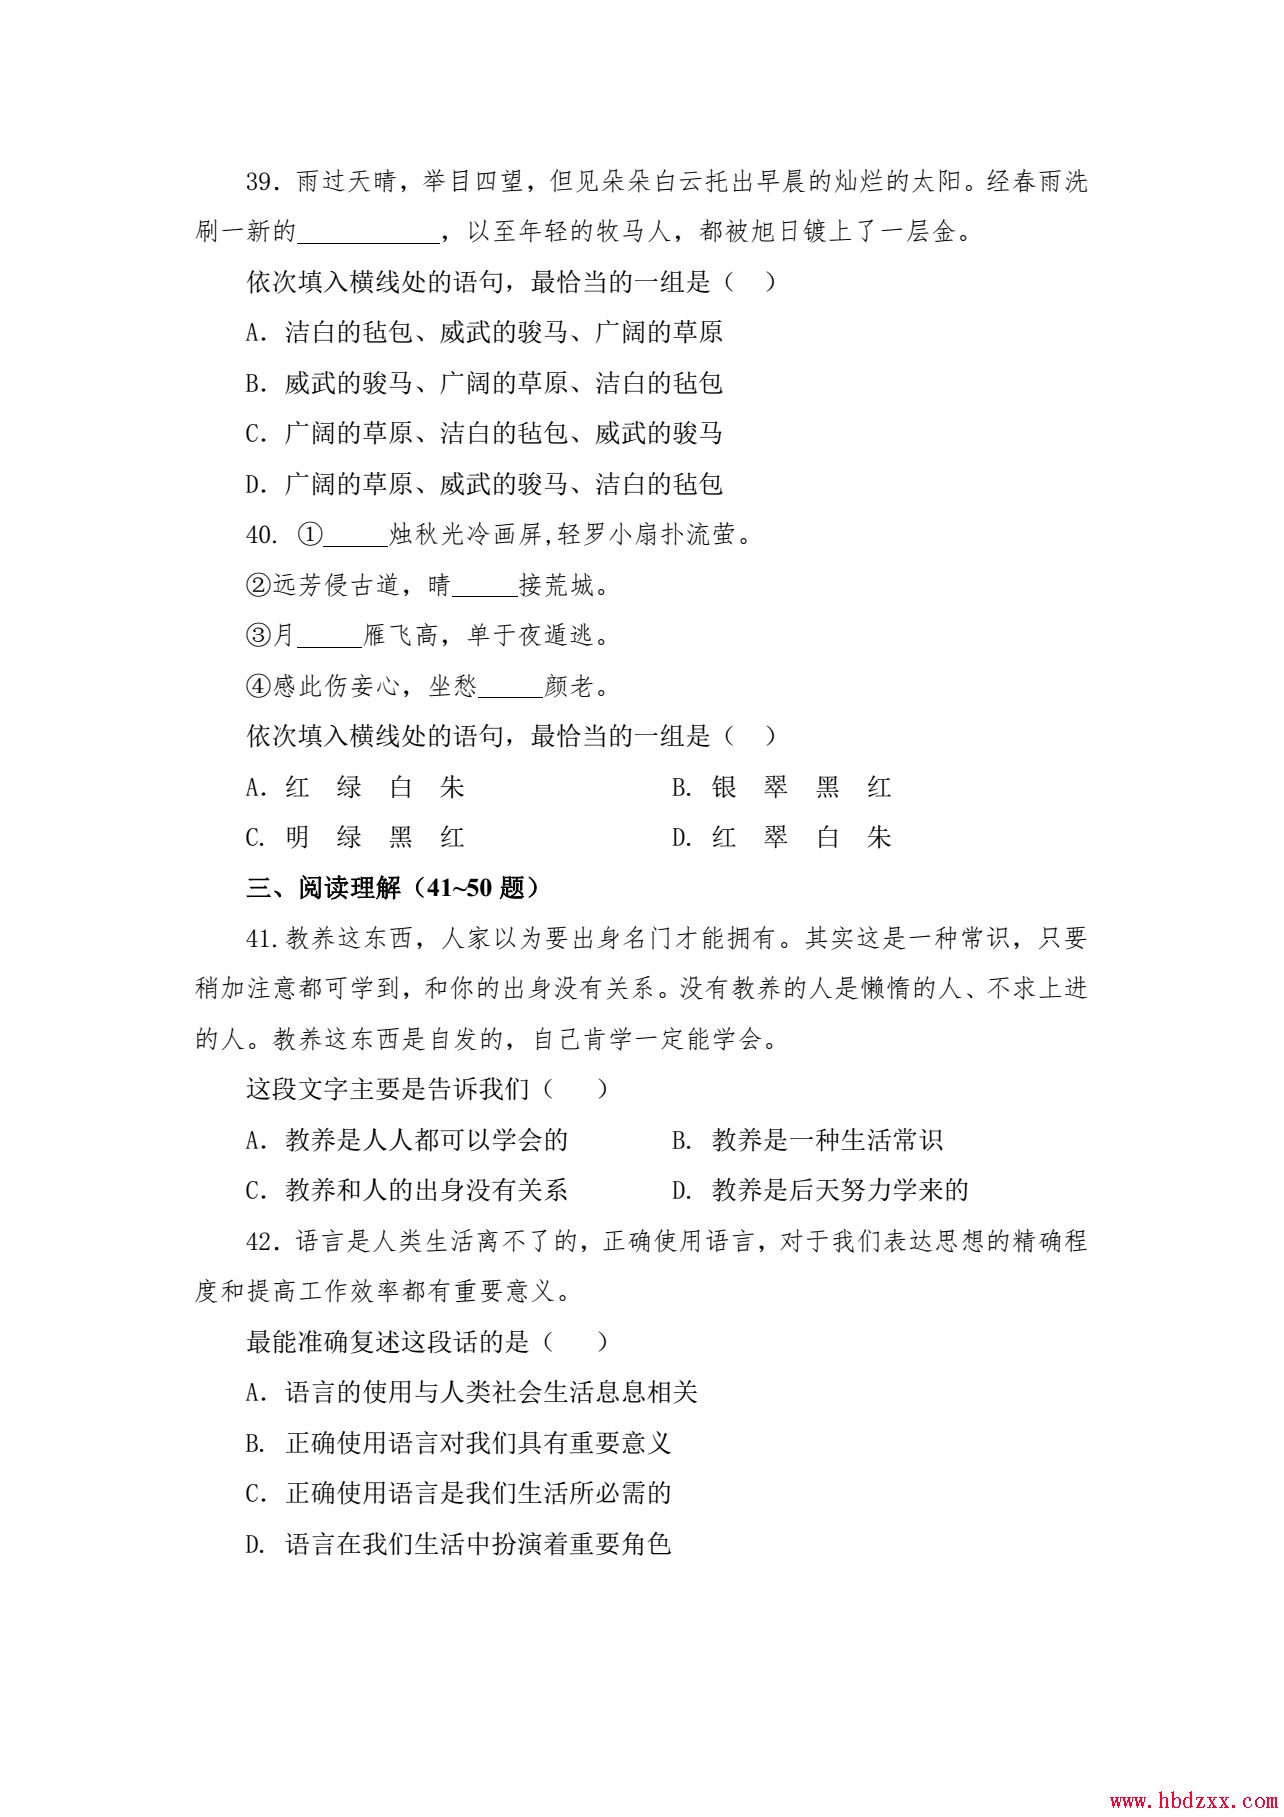 河北App职业技术学院2013年语文单招试题 图2